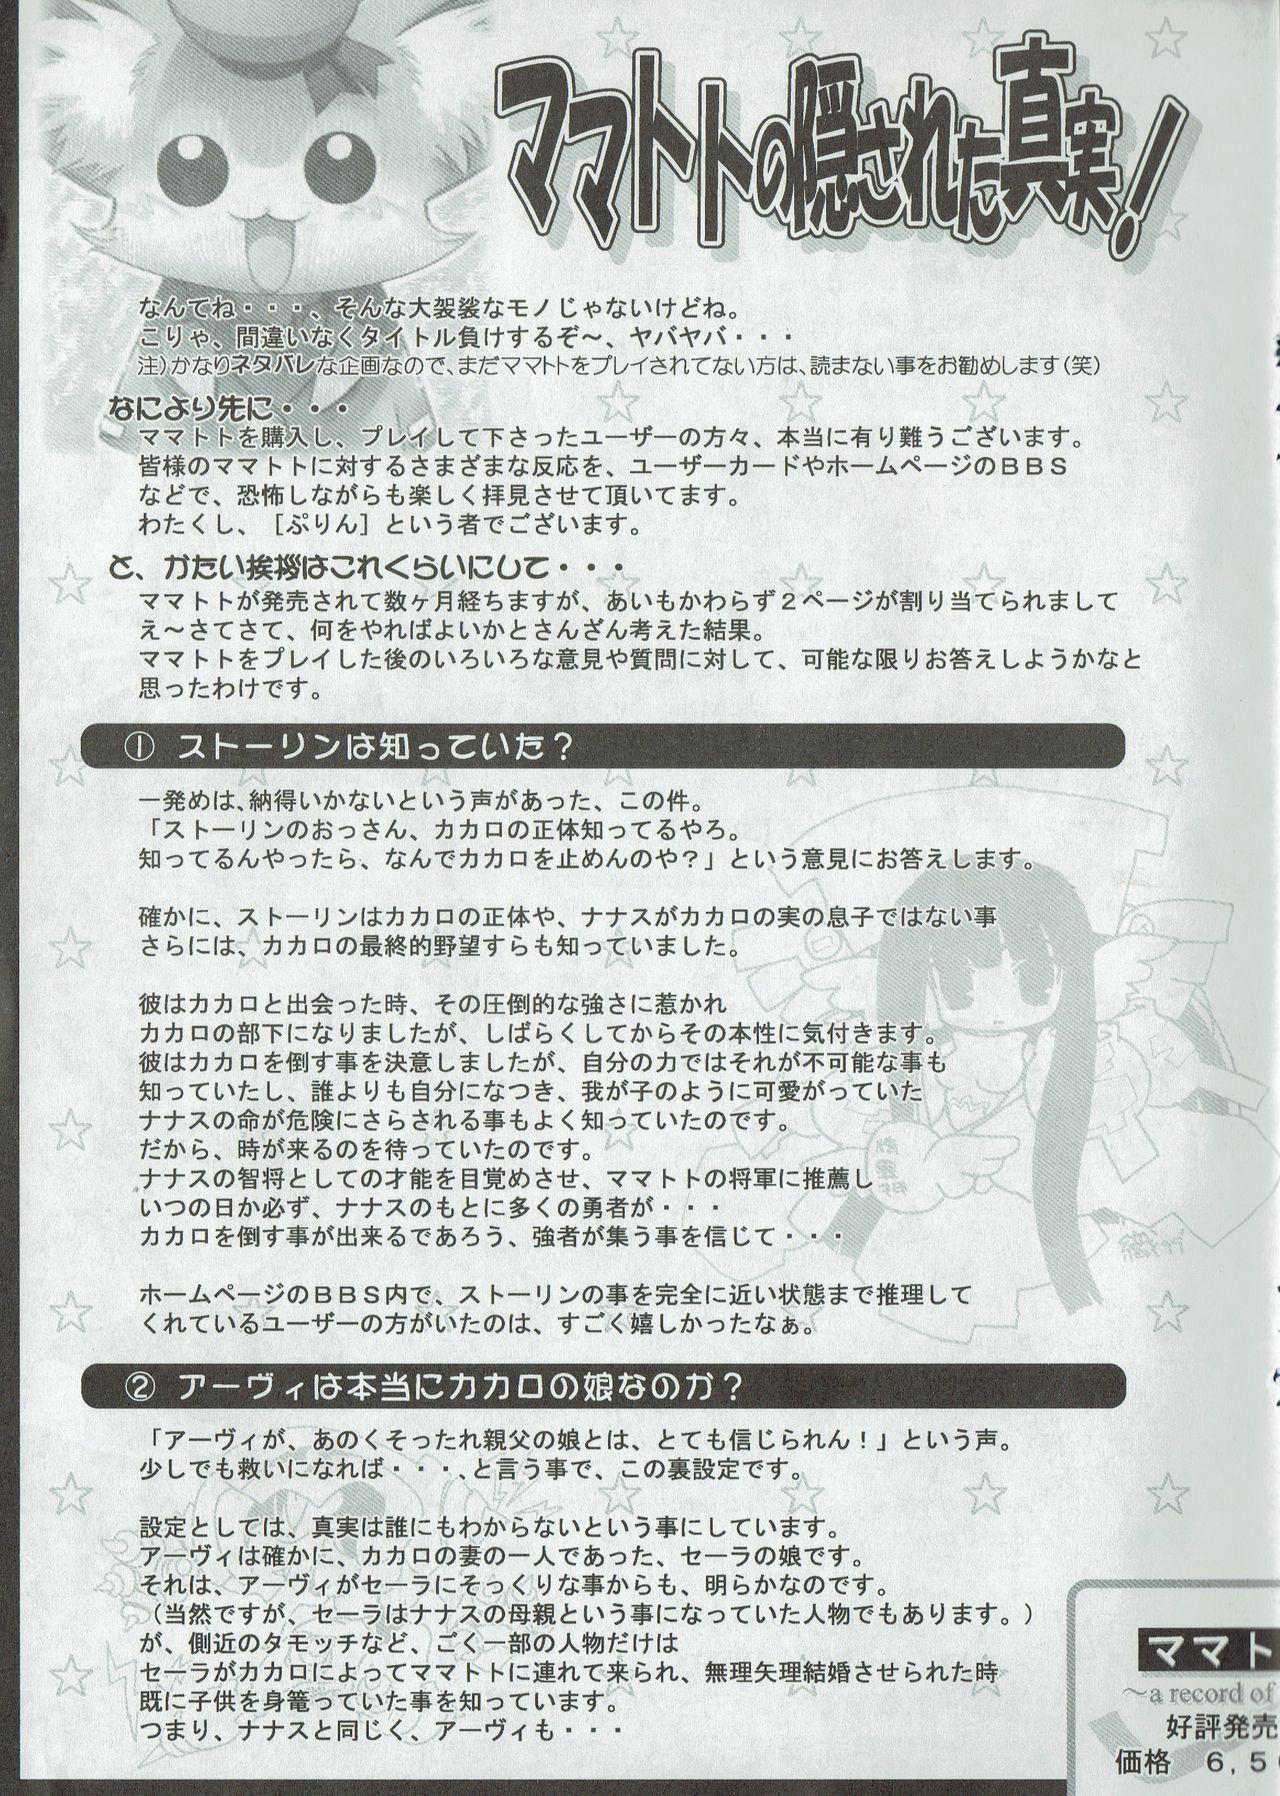 Arisu no Denchi Bakudan Vol. 07 5